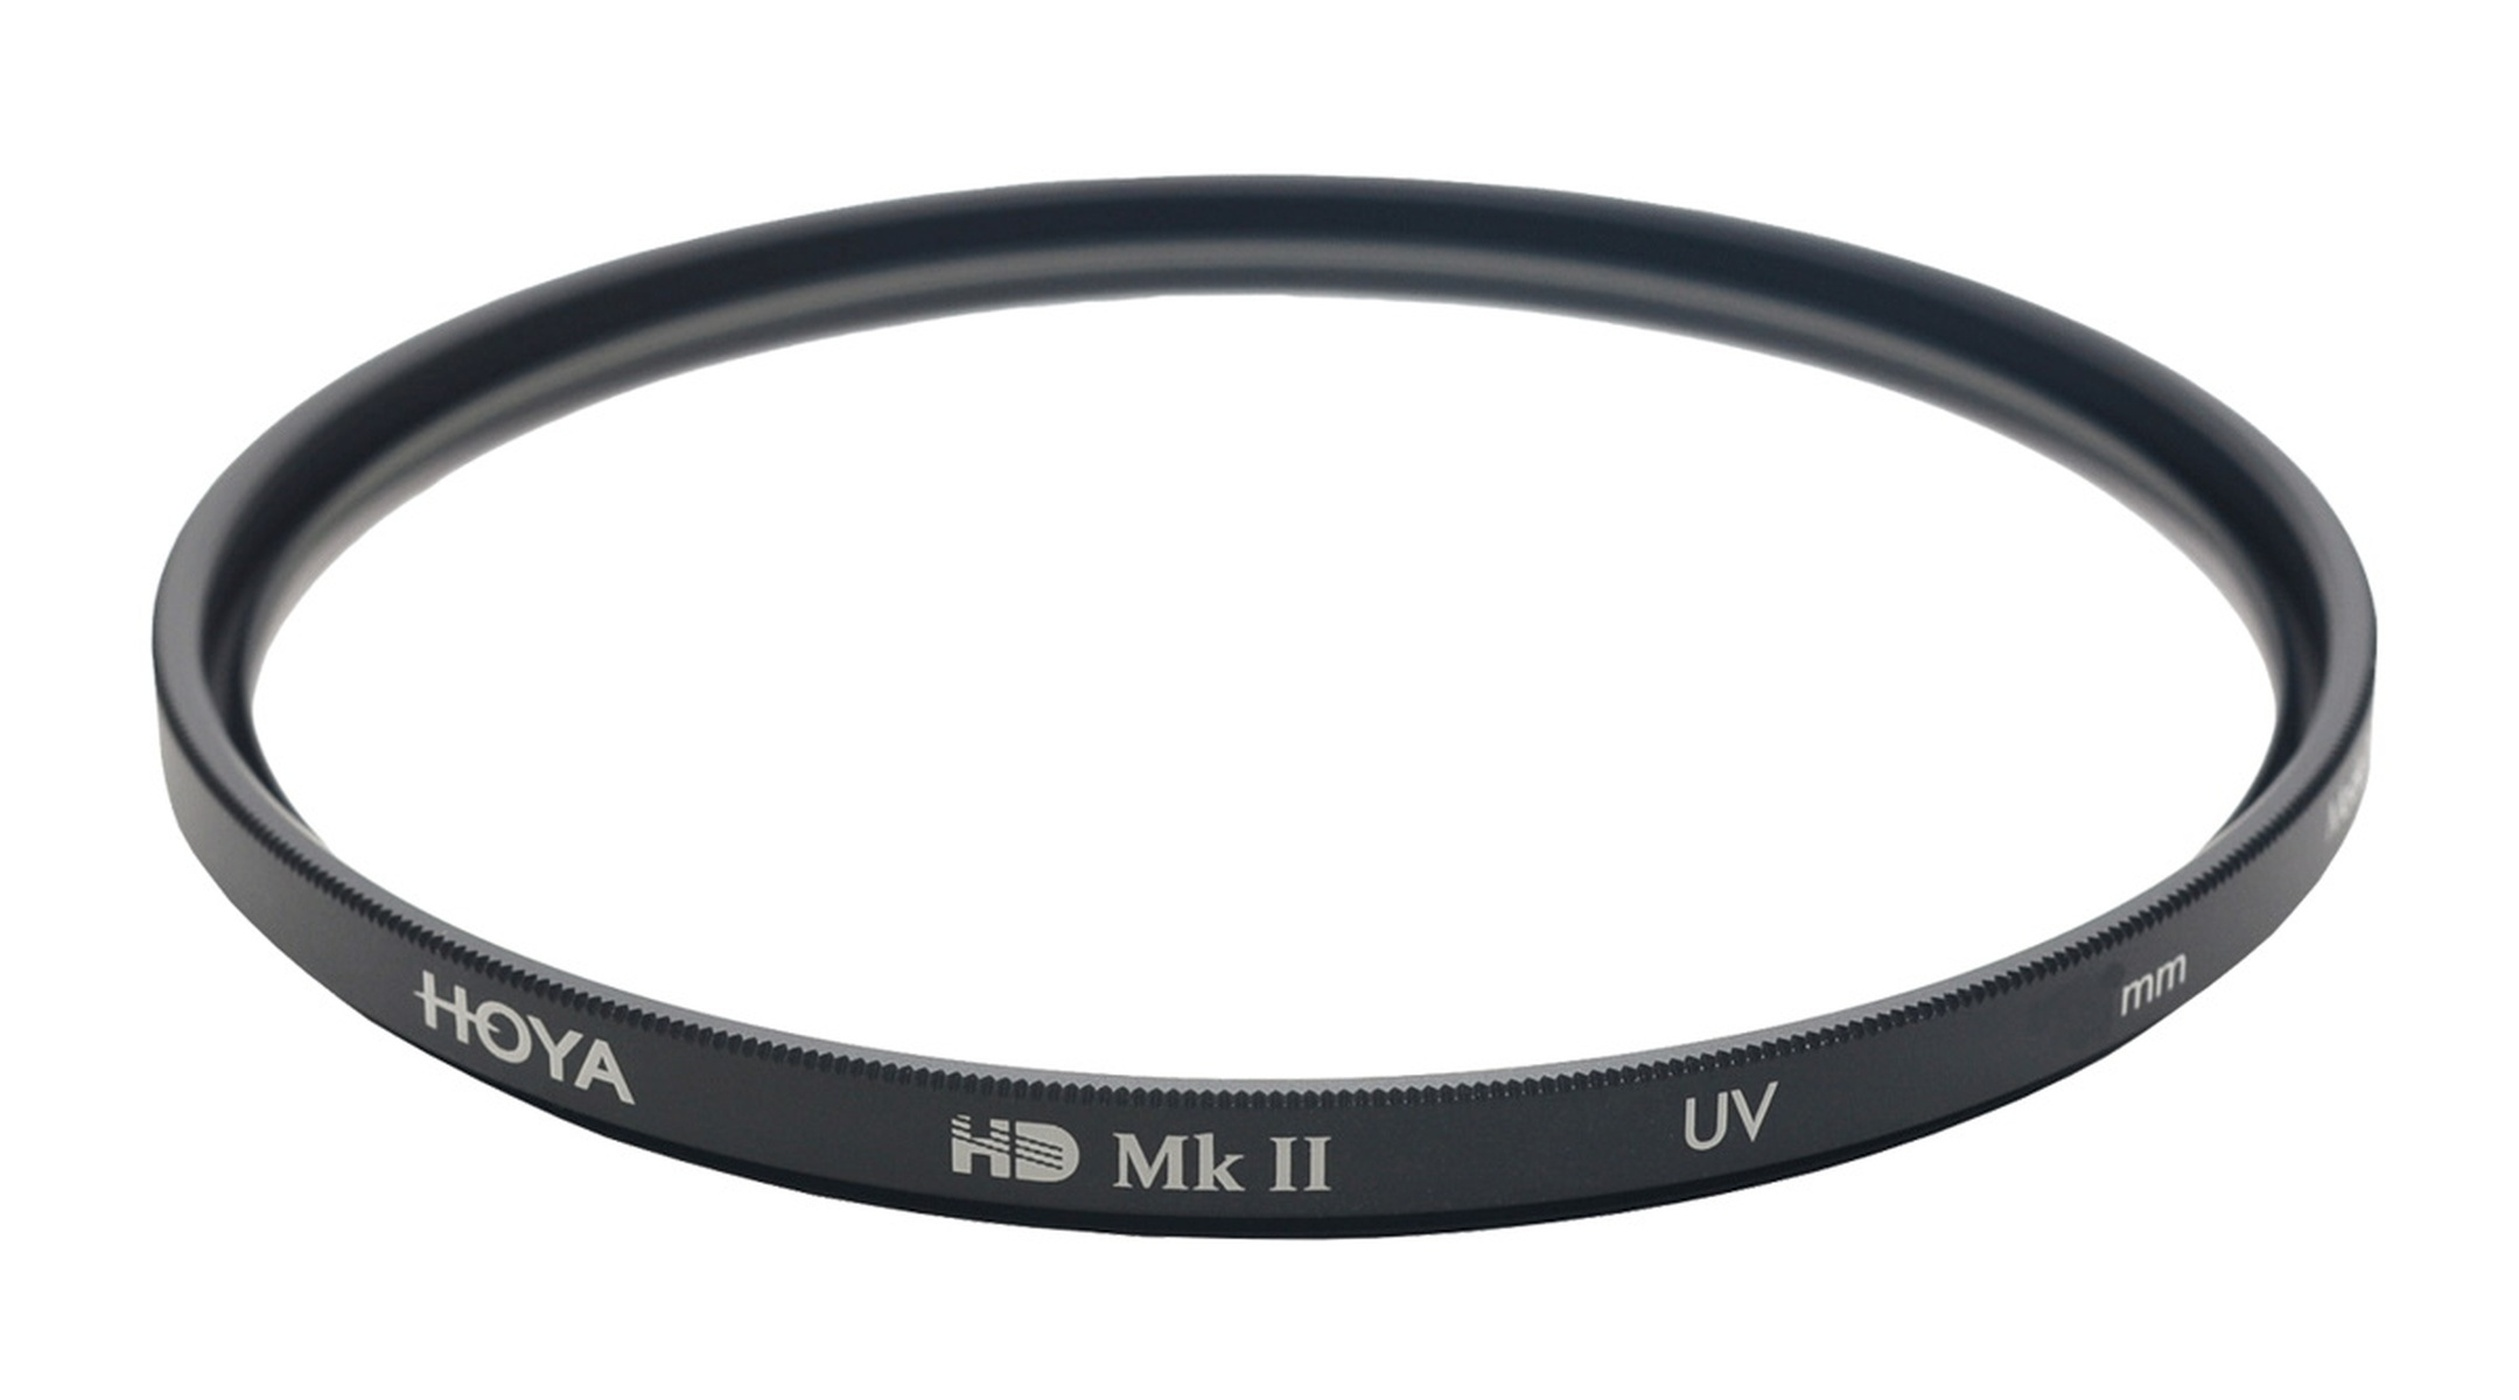 HOYA HD UV MkII 49mm Filter Filter UV mm 49